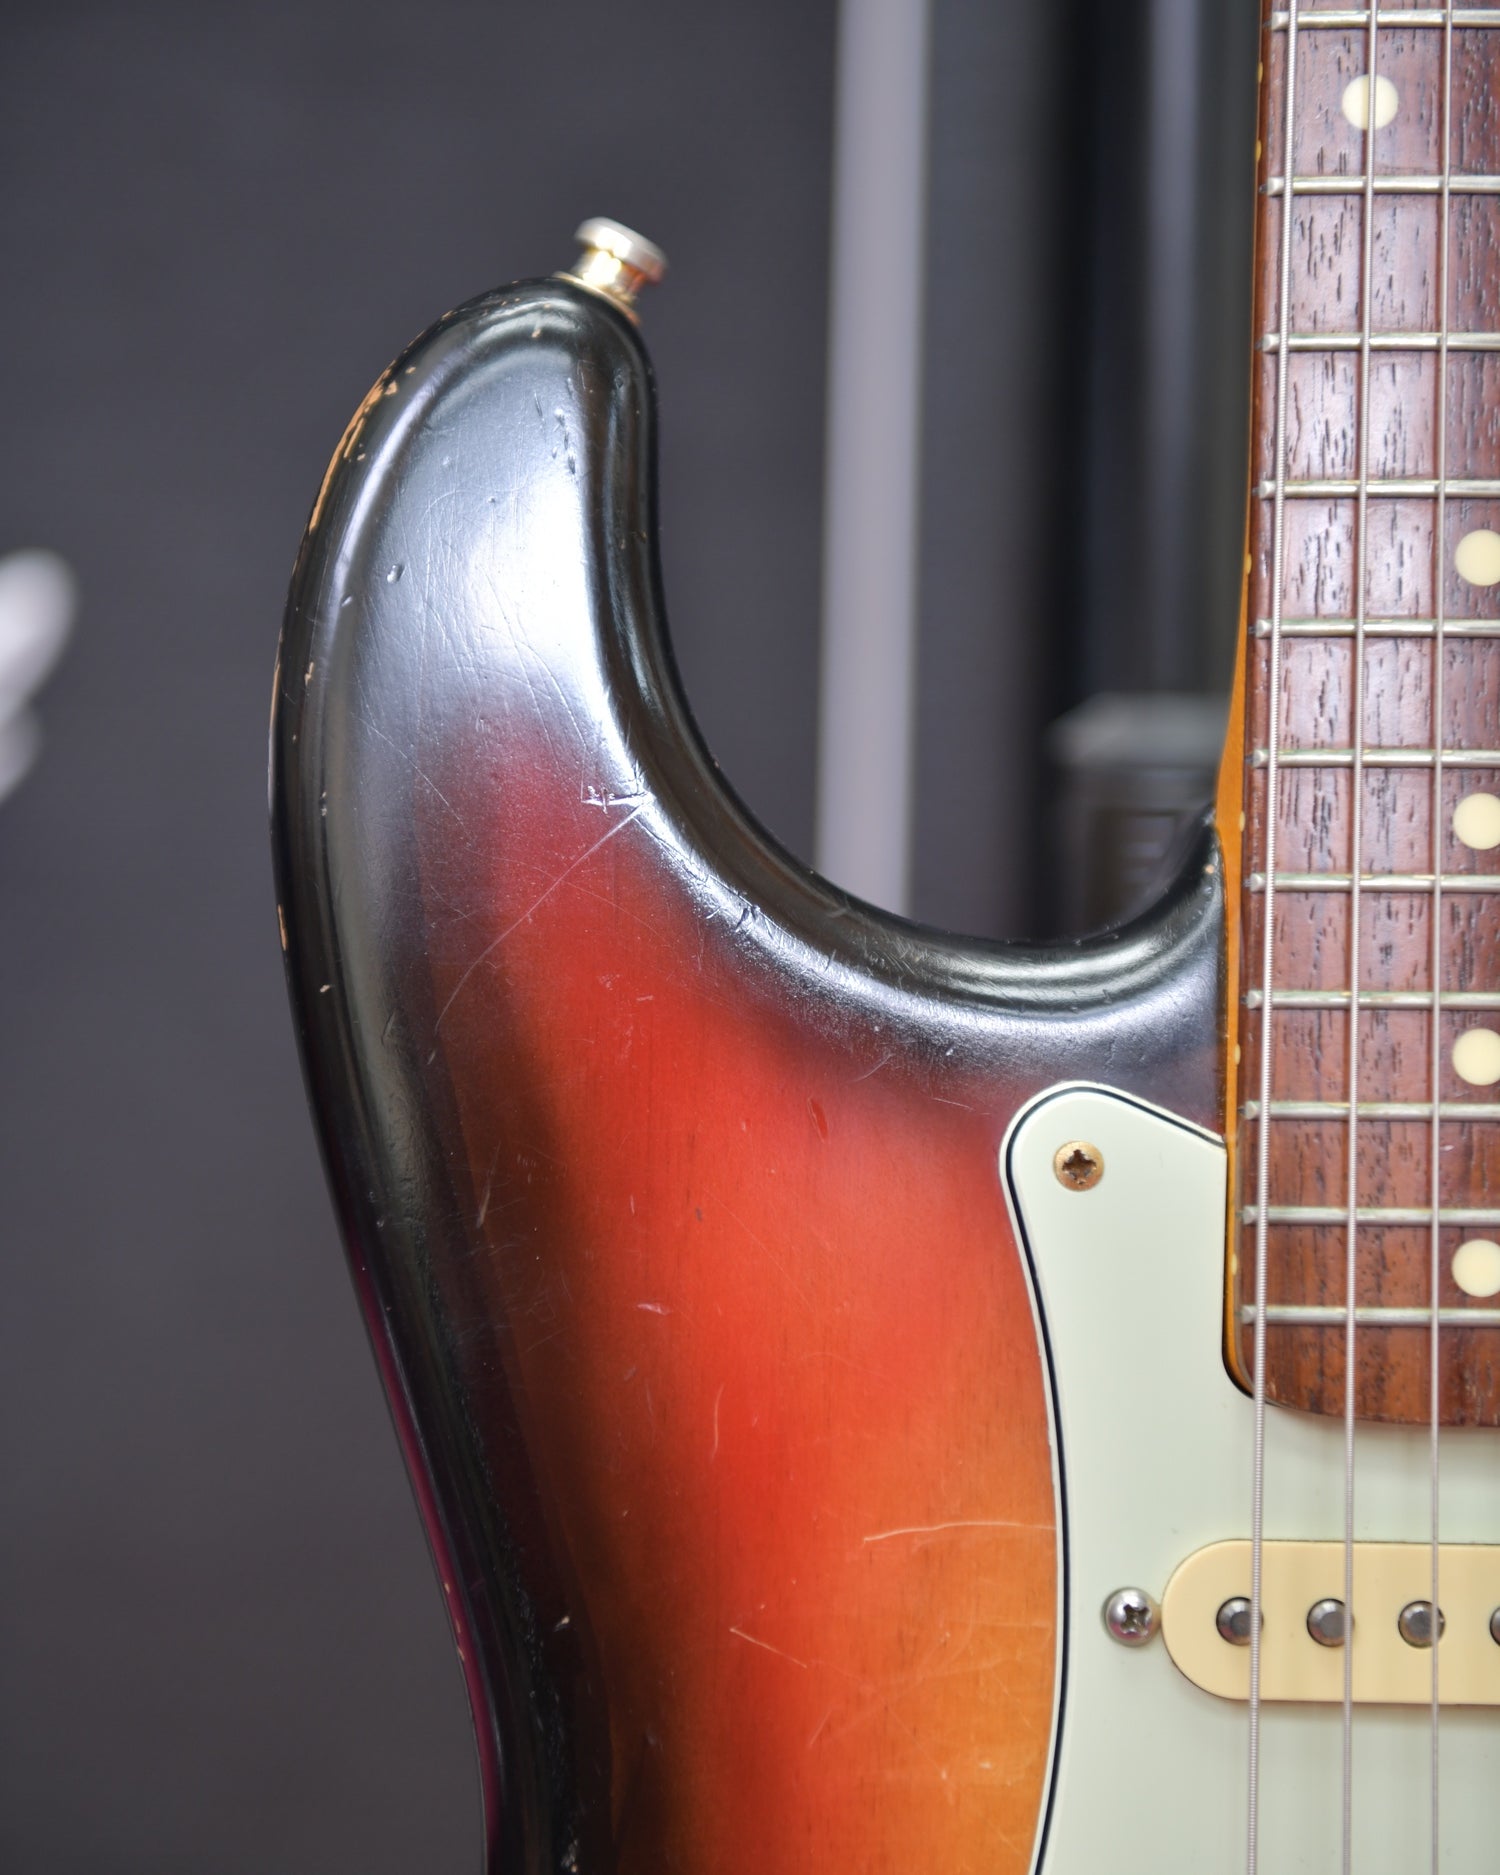 Fender Stratocaster Japan ST62 Modified 3TSB Relic Nitro Lacquer CIJ